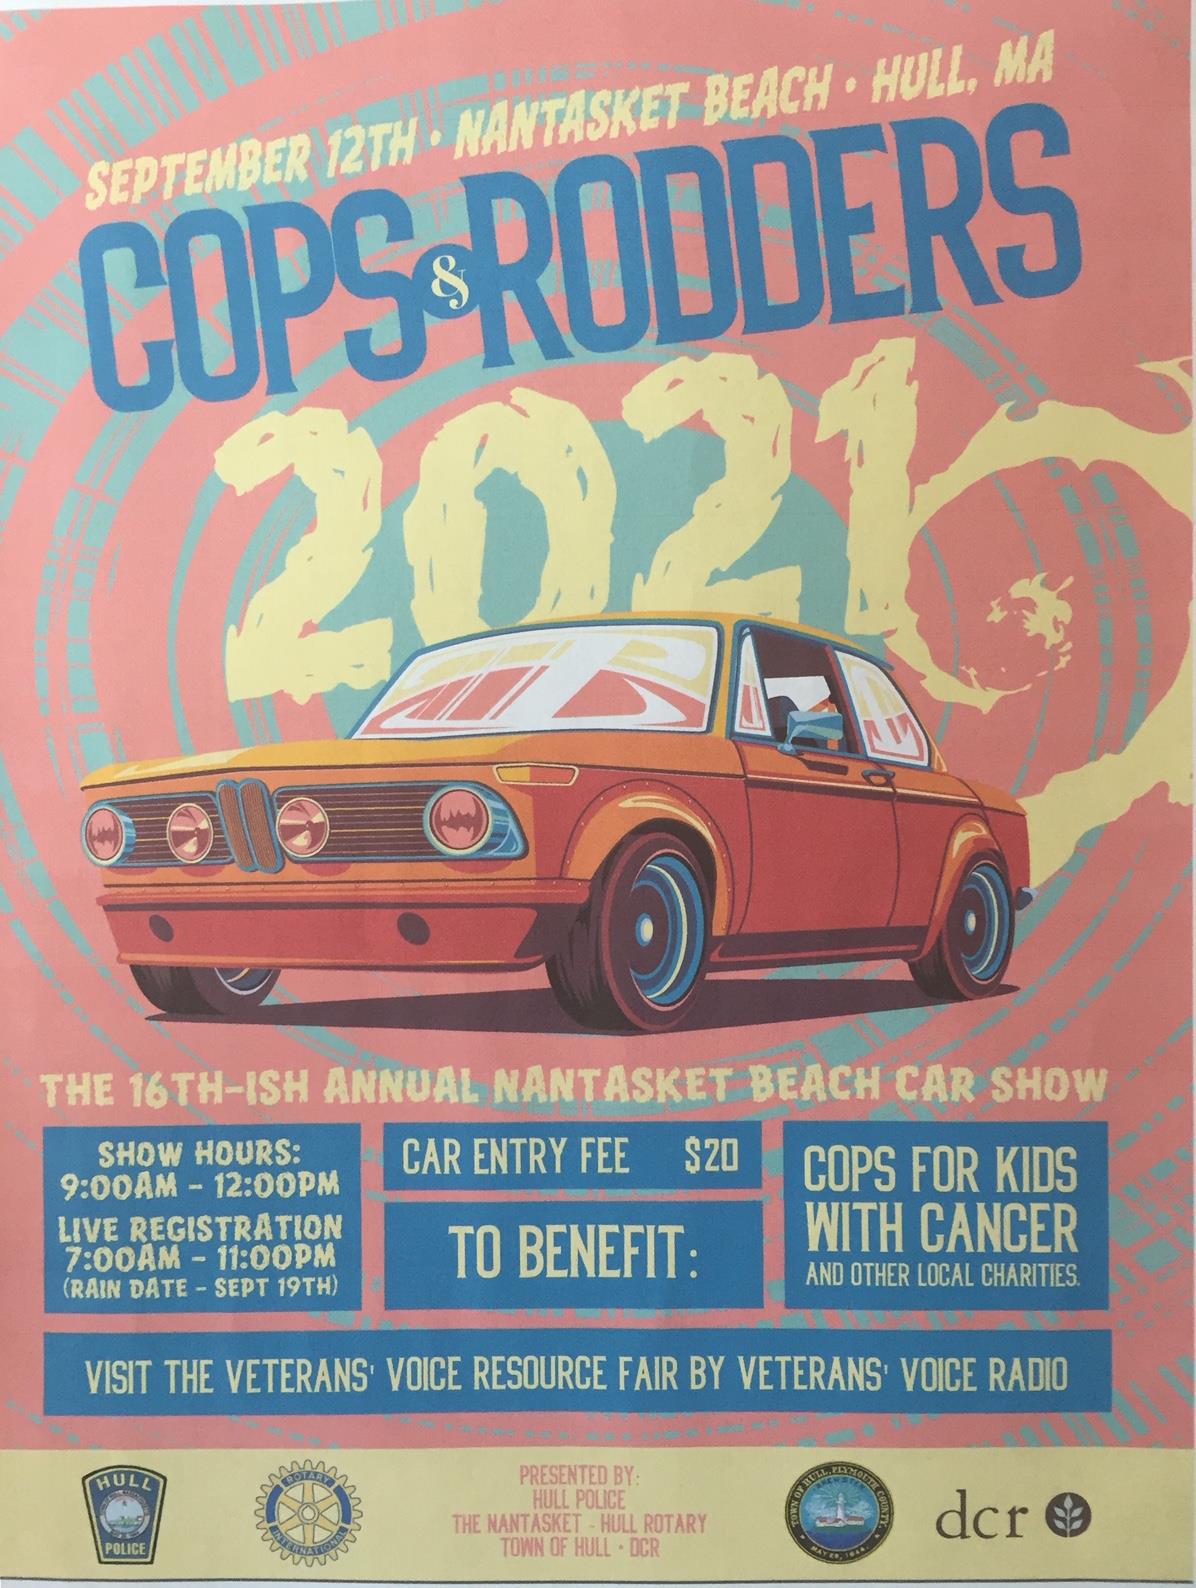 2021 Cops & Rodders flyer image